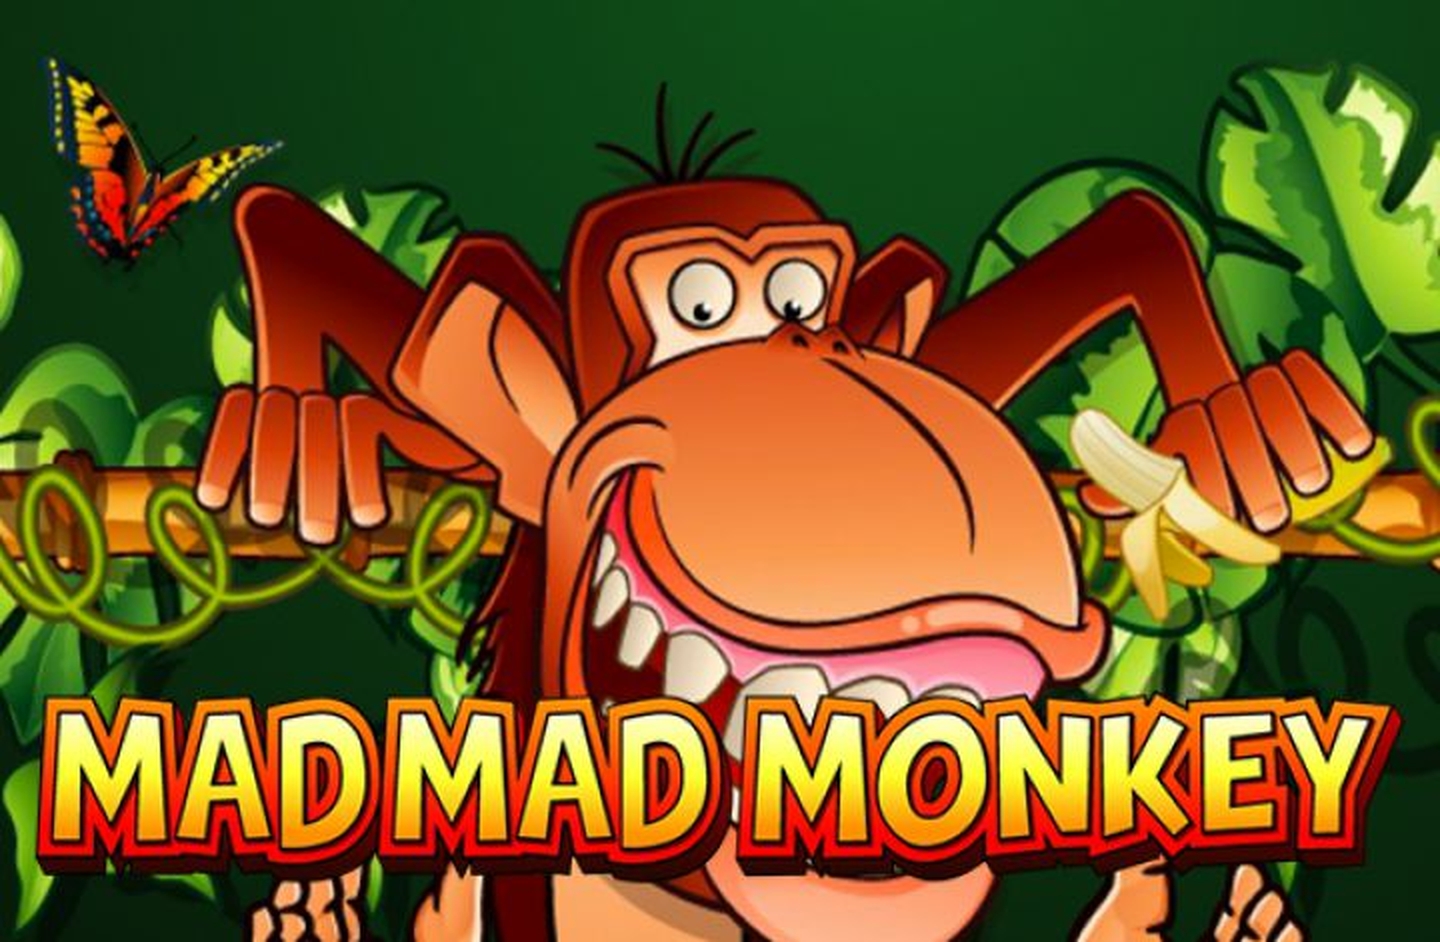 Mad Mad Monkey Mini demo